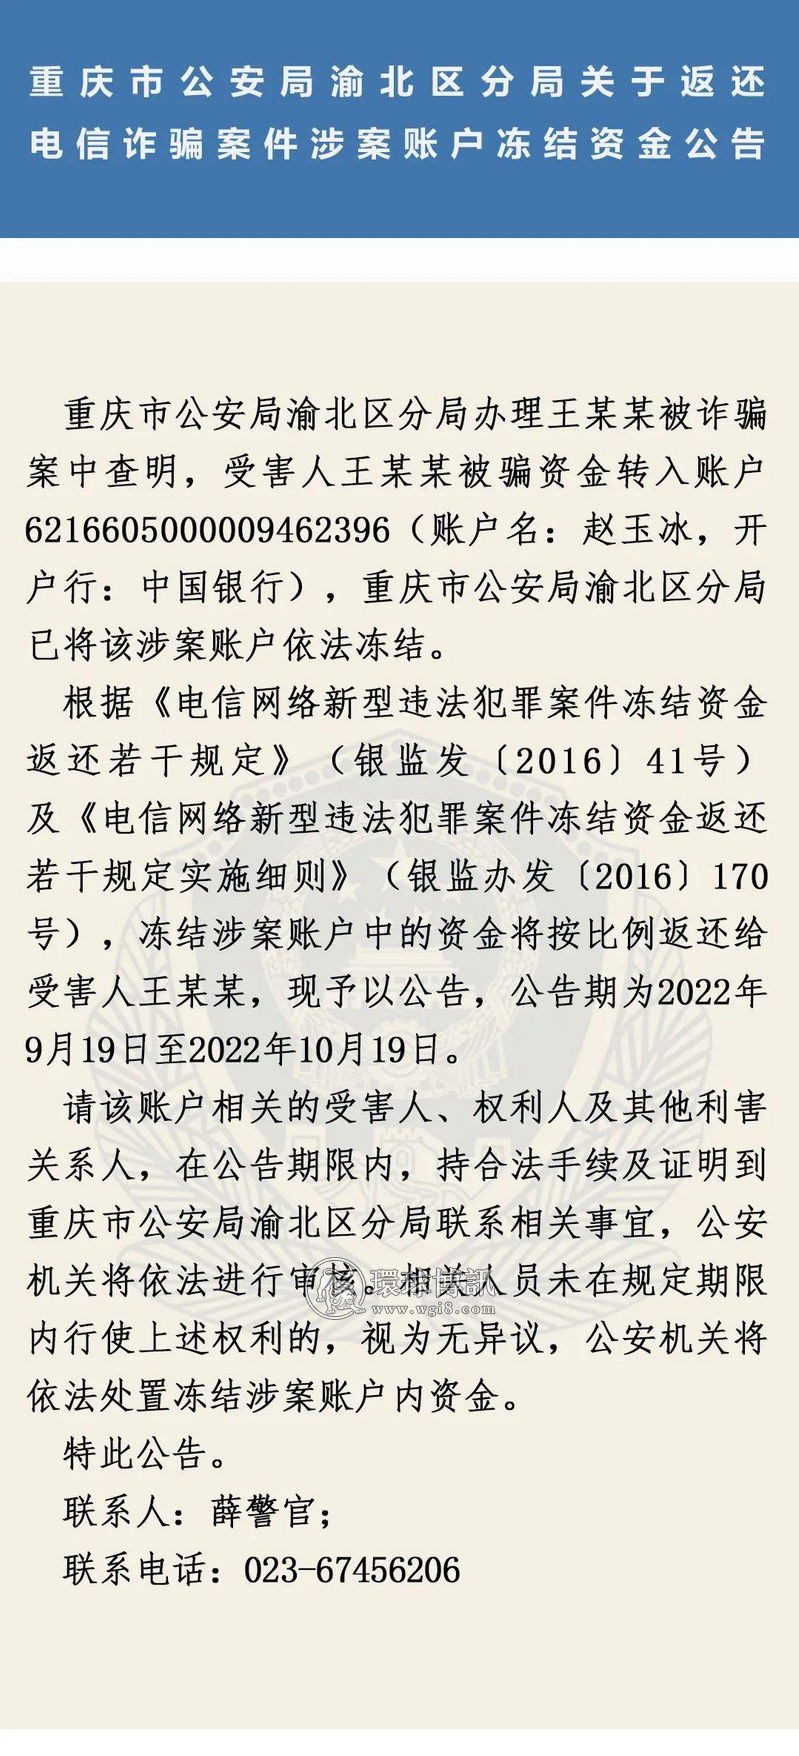 重庆渝北区分局关于返还电信诈骗案件涉案账户冻结资金公告